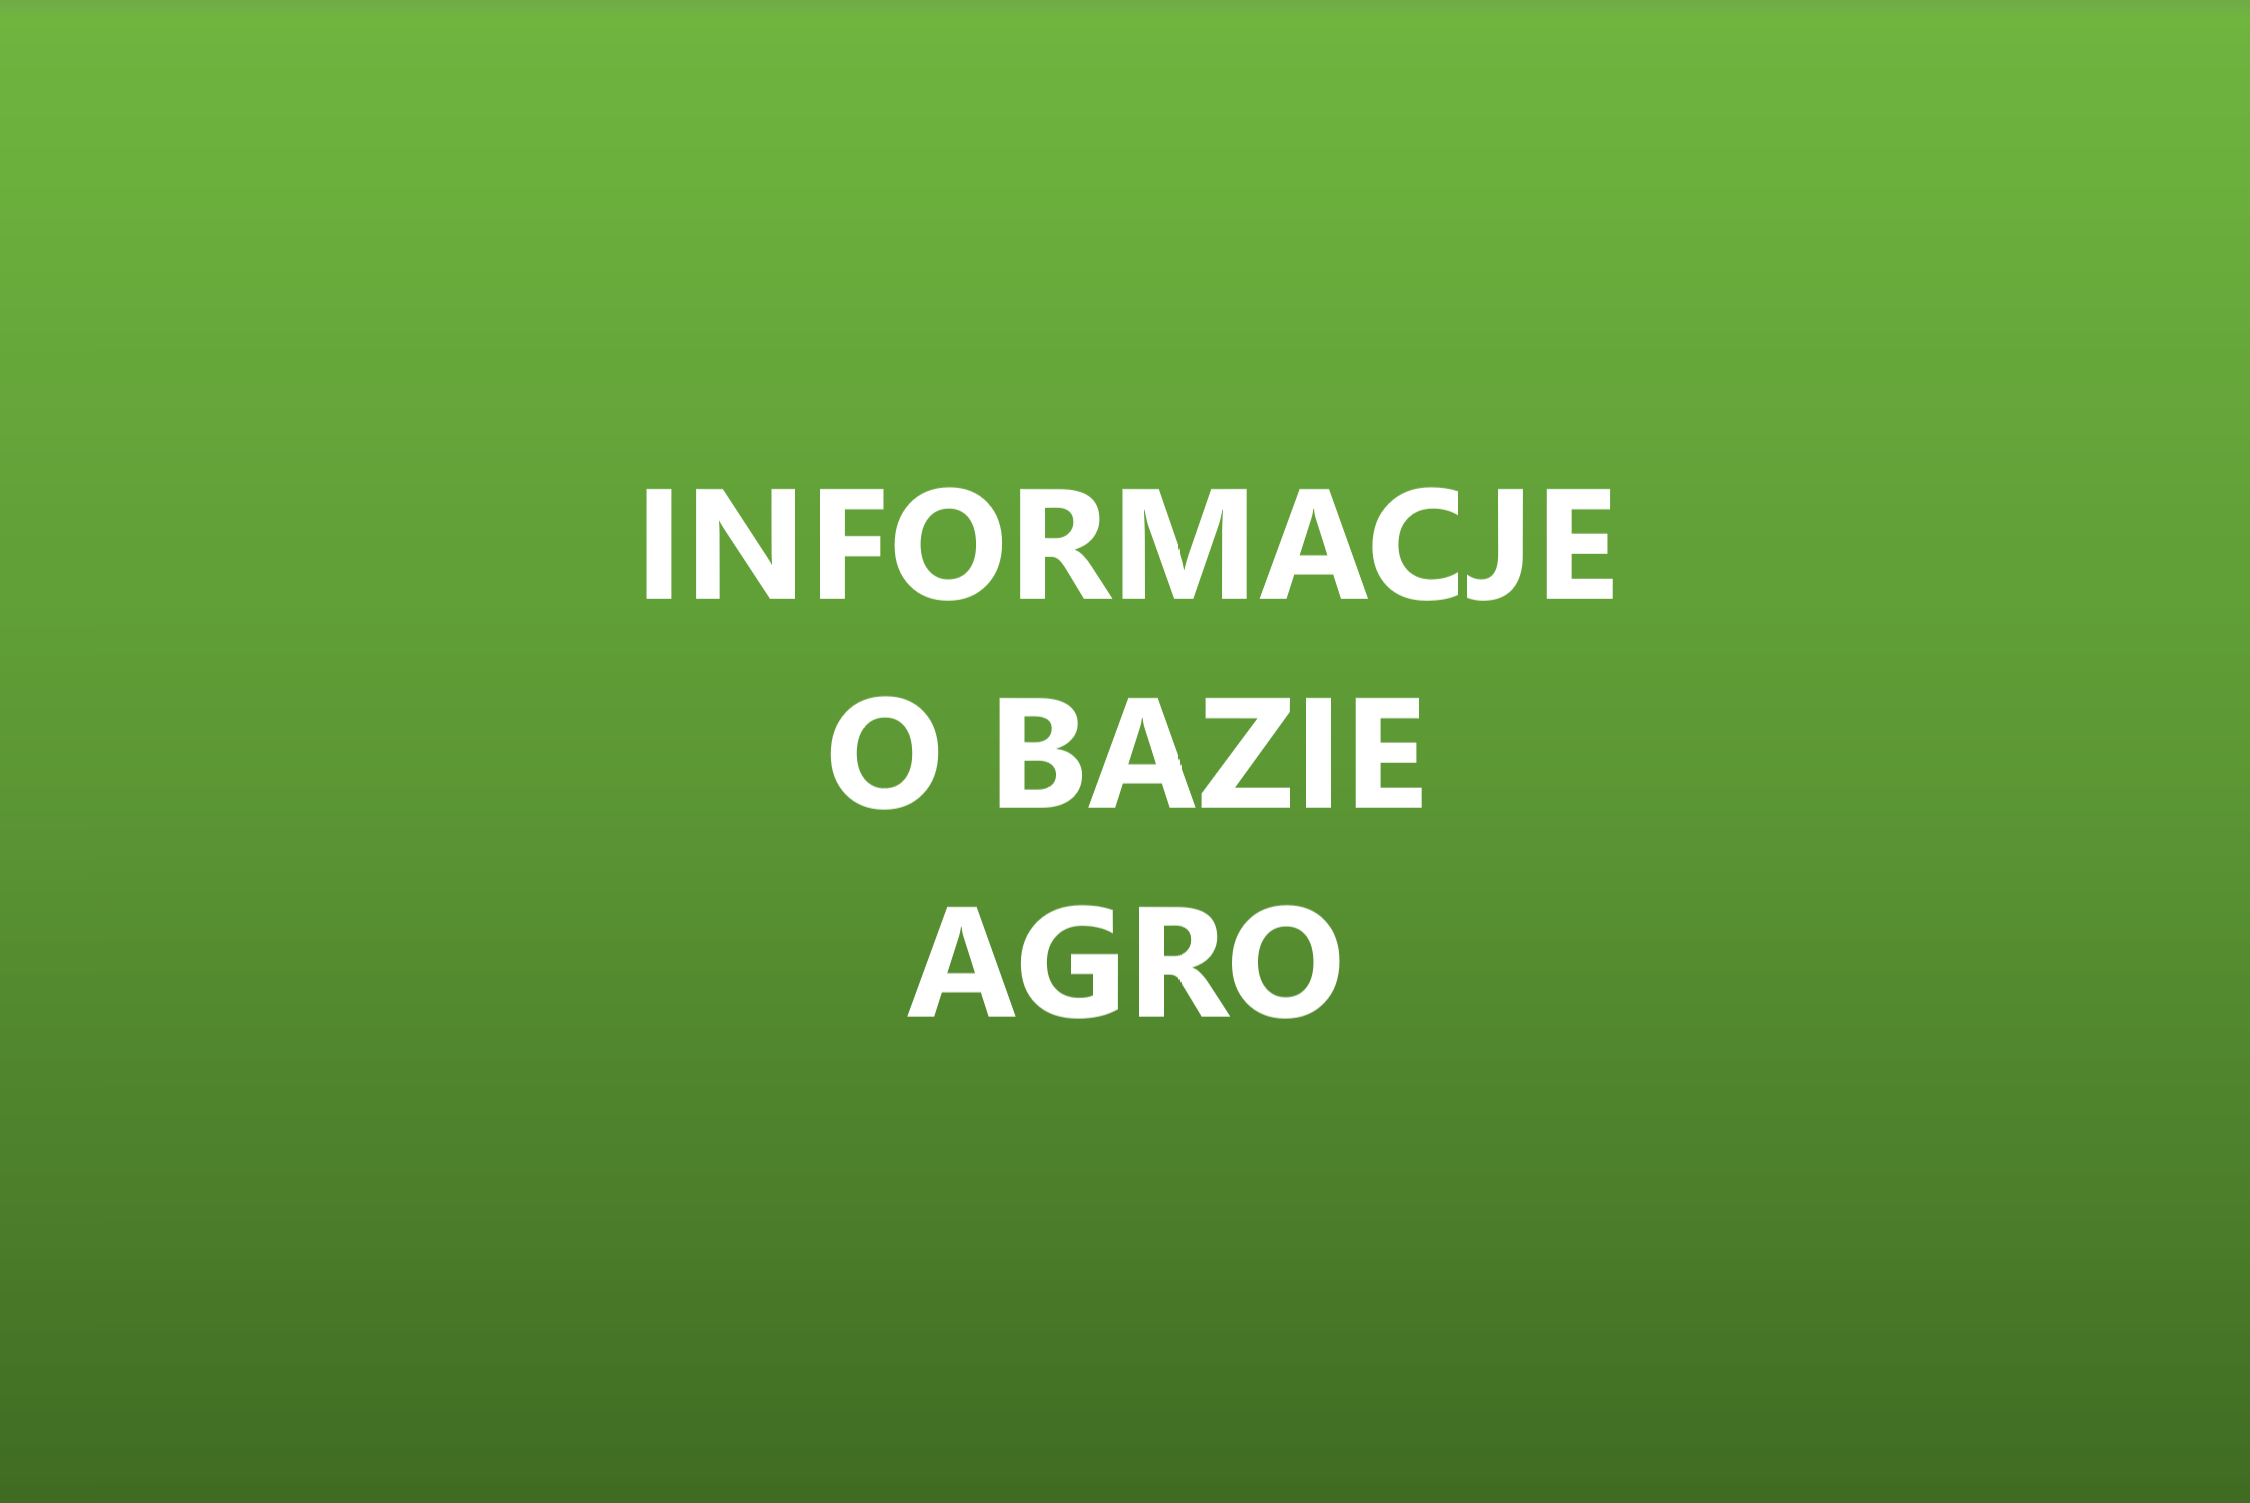 Informacje o bazie AGRO